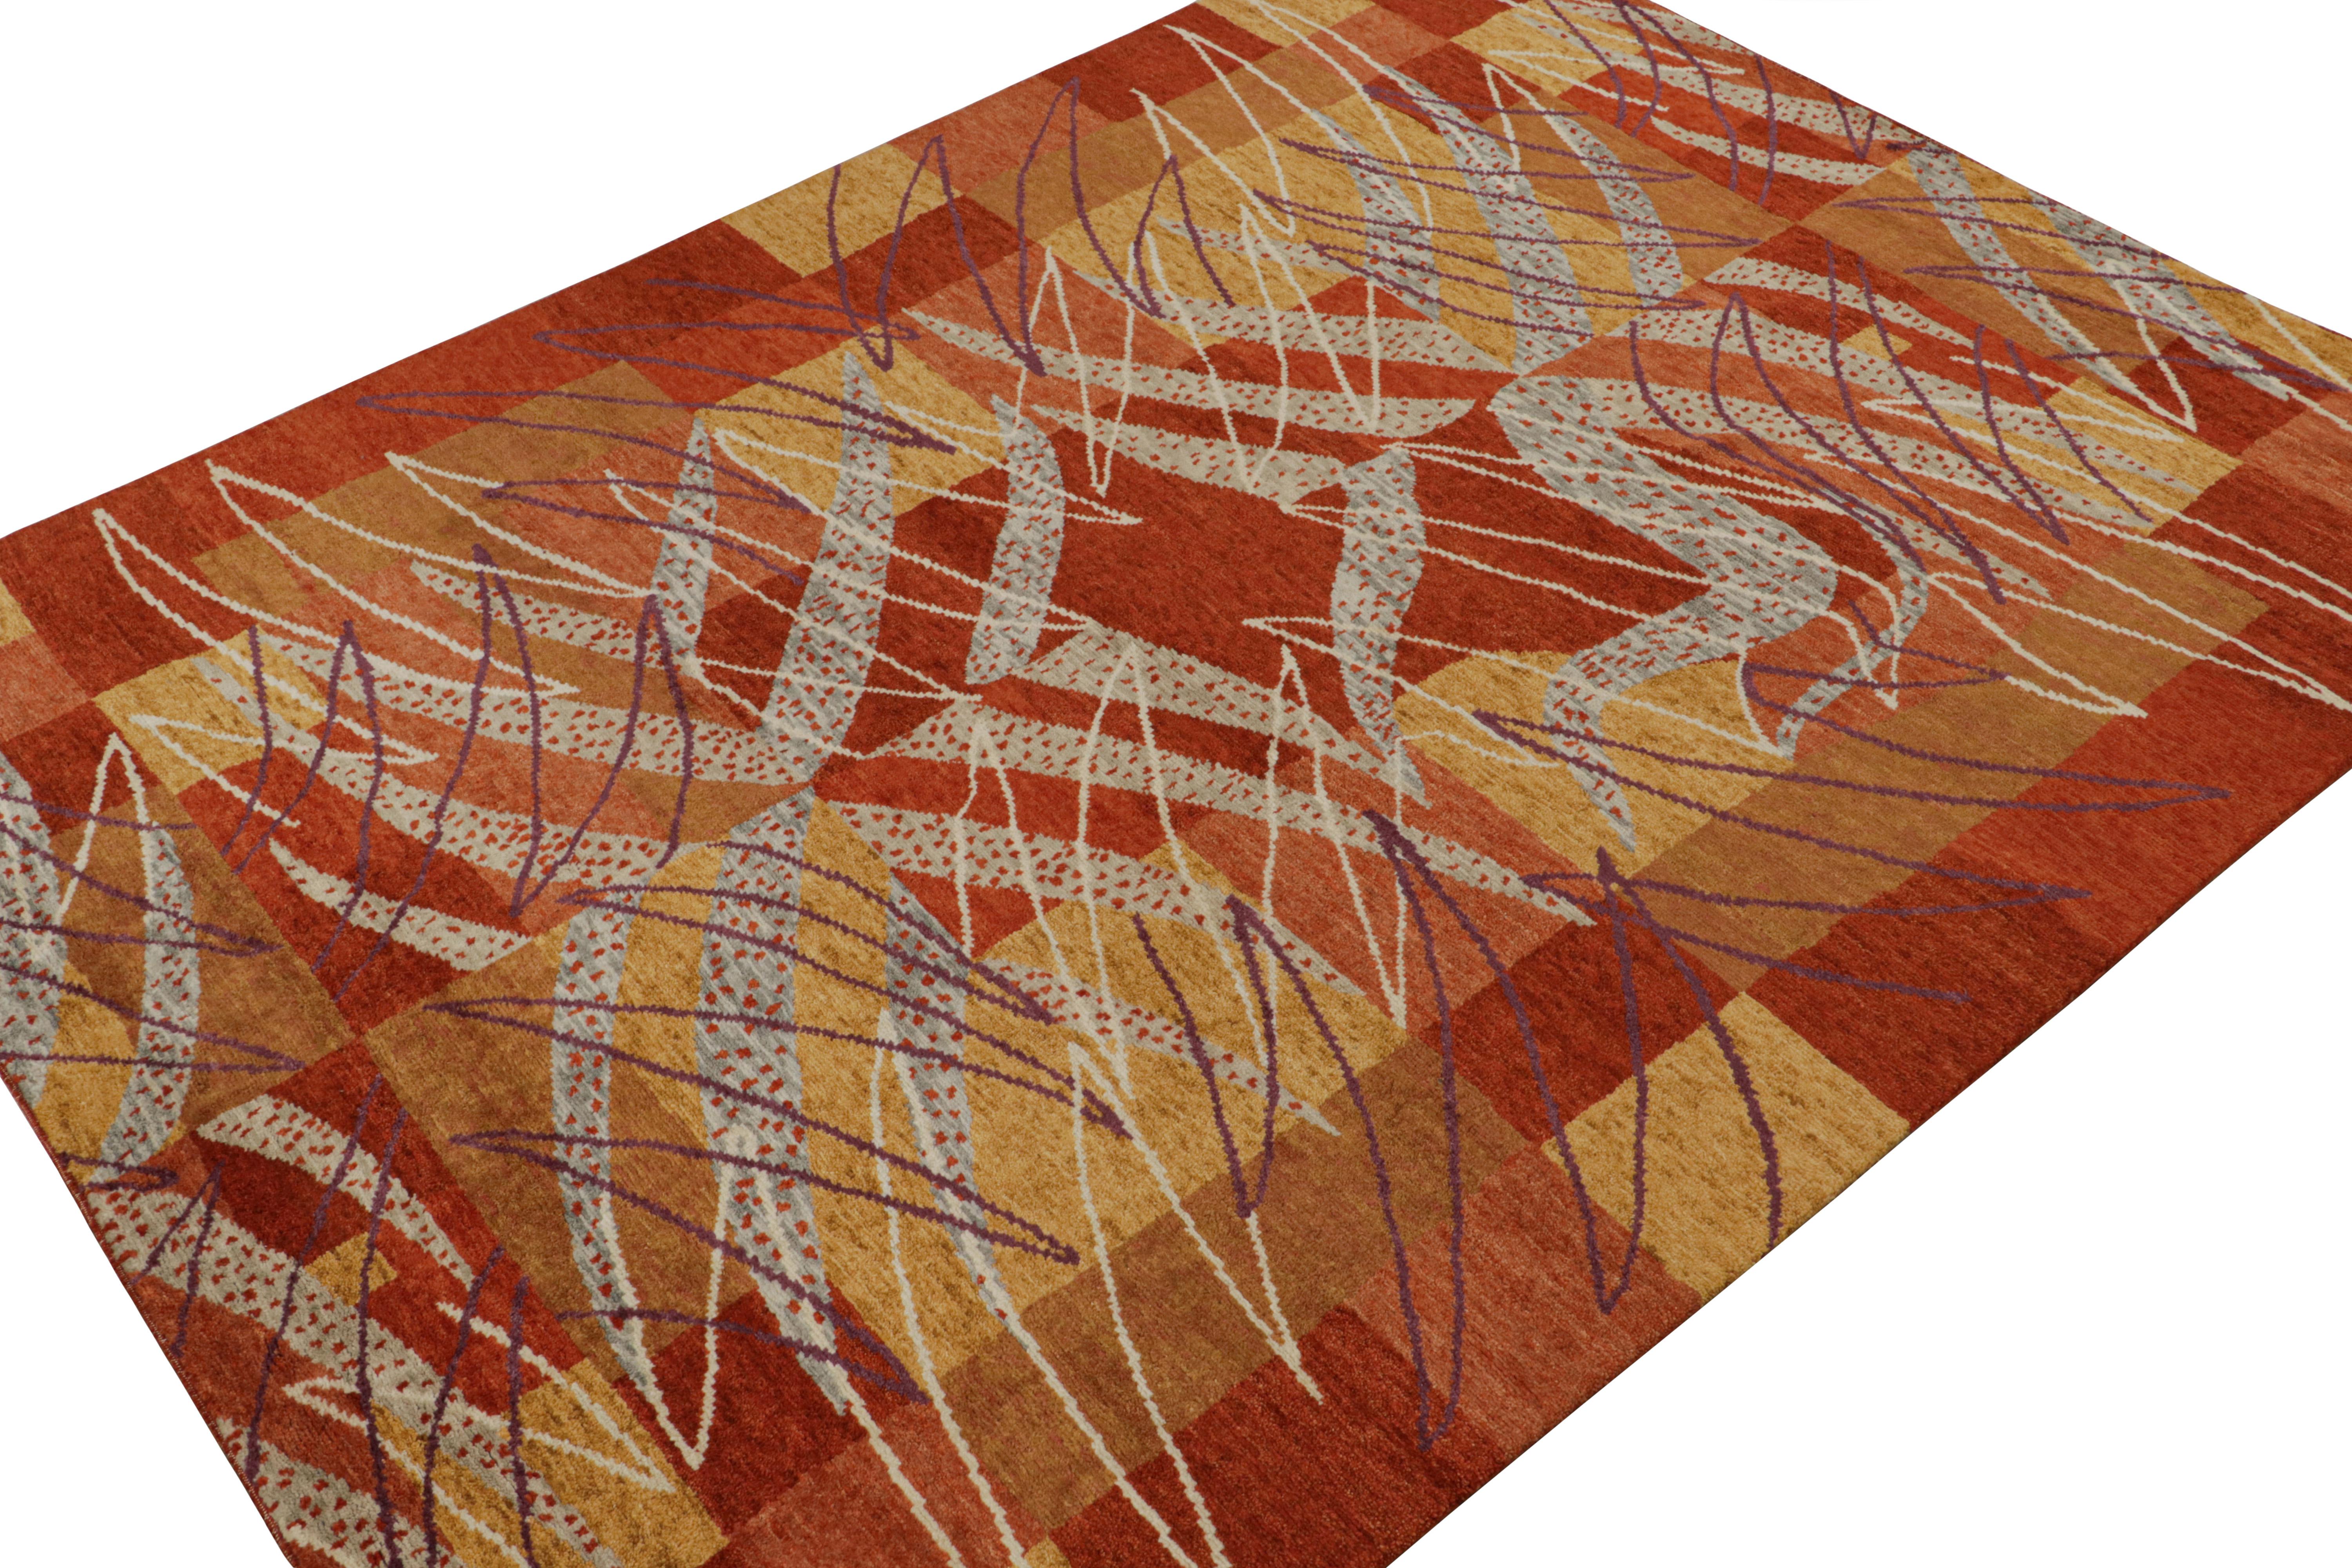 Dieser handgeknüpfte Wollteppich im Format 10x14 stammt aus der modernen Scandinavian-Teppichkollektion von Rug & Kilim.

Über das Design:

Dieses Design erfreut sich an roten, goldfarbenen und grauen geometrischen Mustern, die vom schwedischen